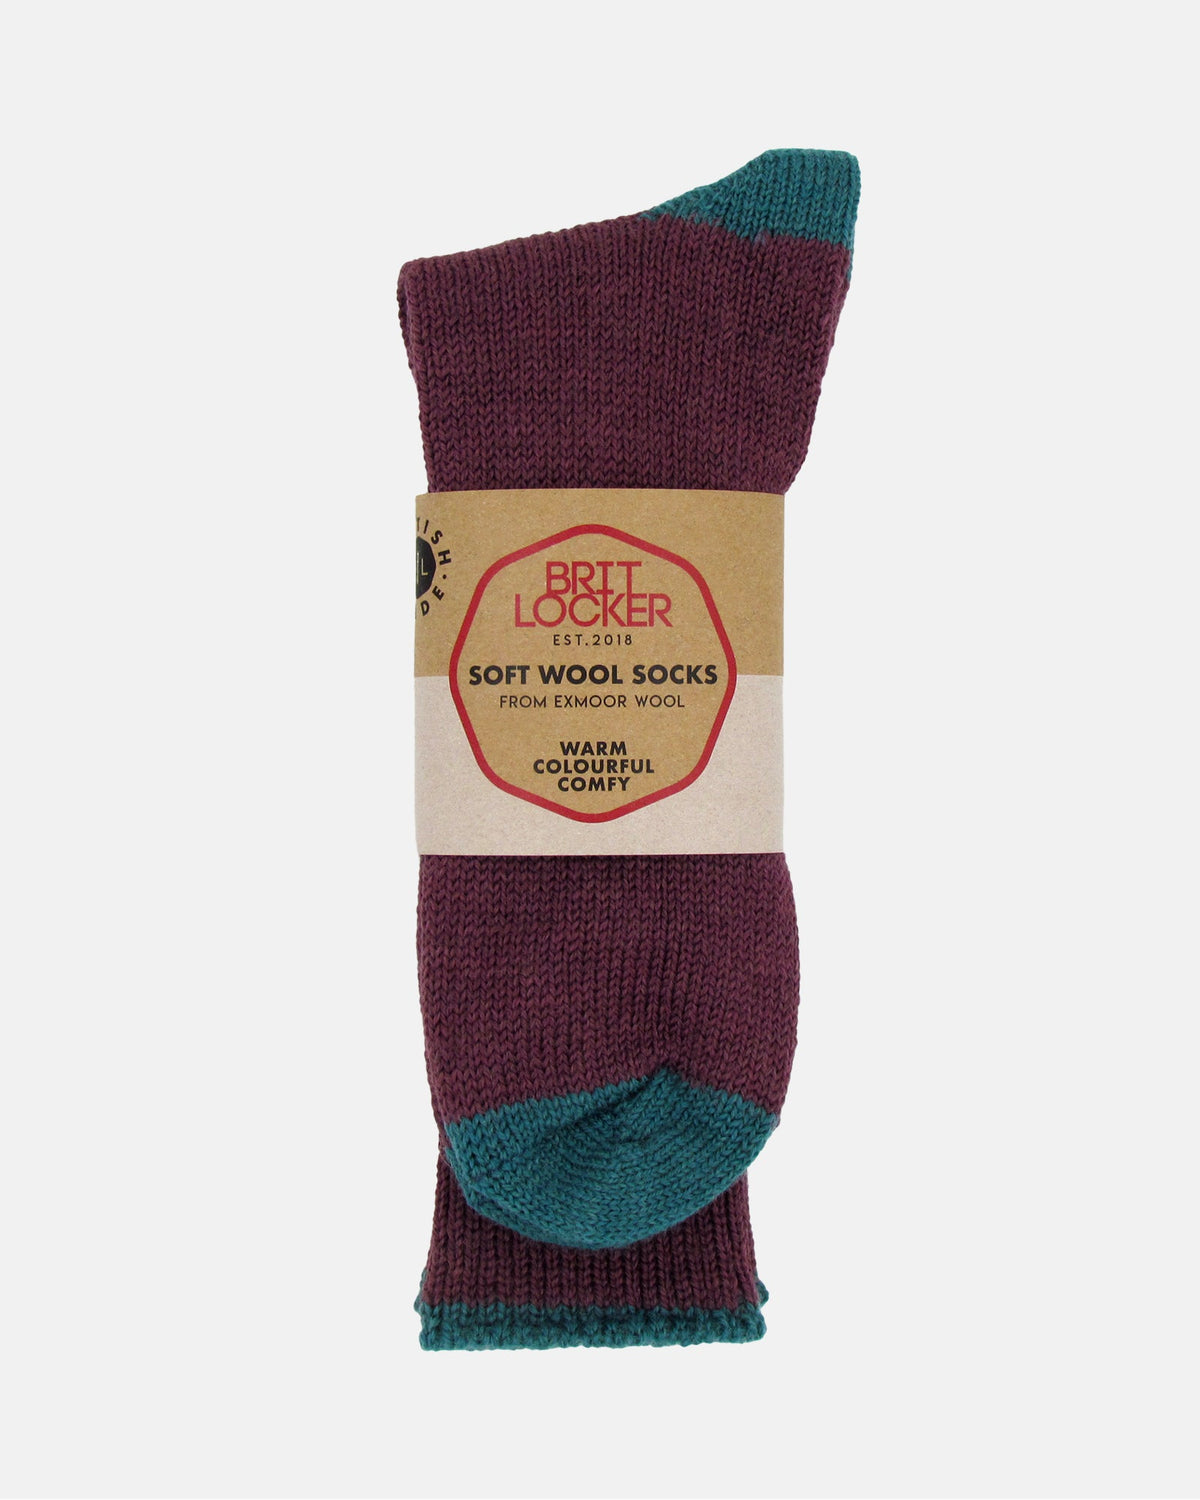 Soft Wool Socks - Aubergine/Aqua - BRIT LOCKER